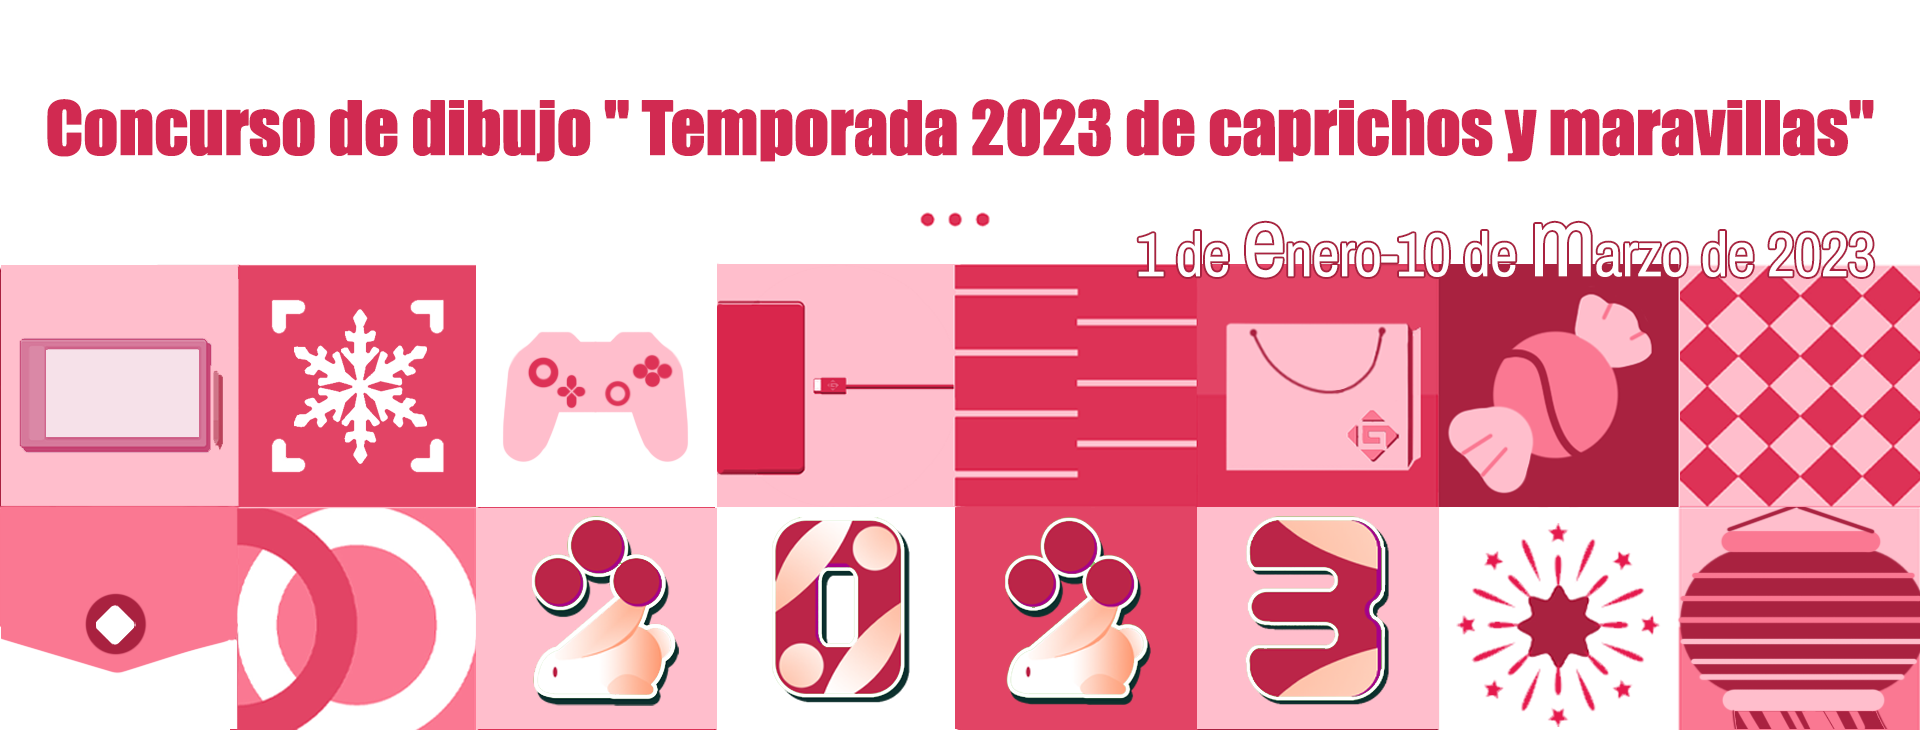 Spanish_GAOMON Concurso de dibujo “2023 Temporada de caprichos y maravillas”